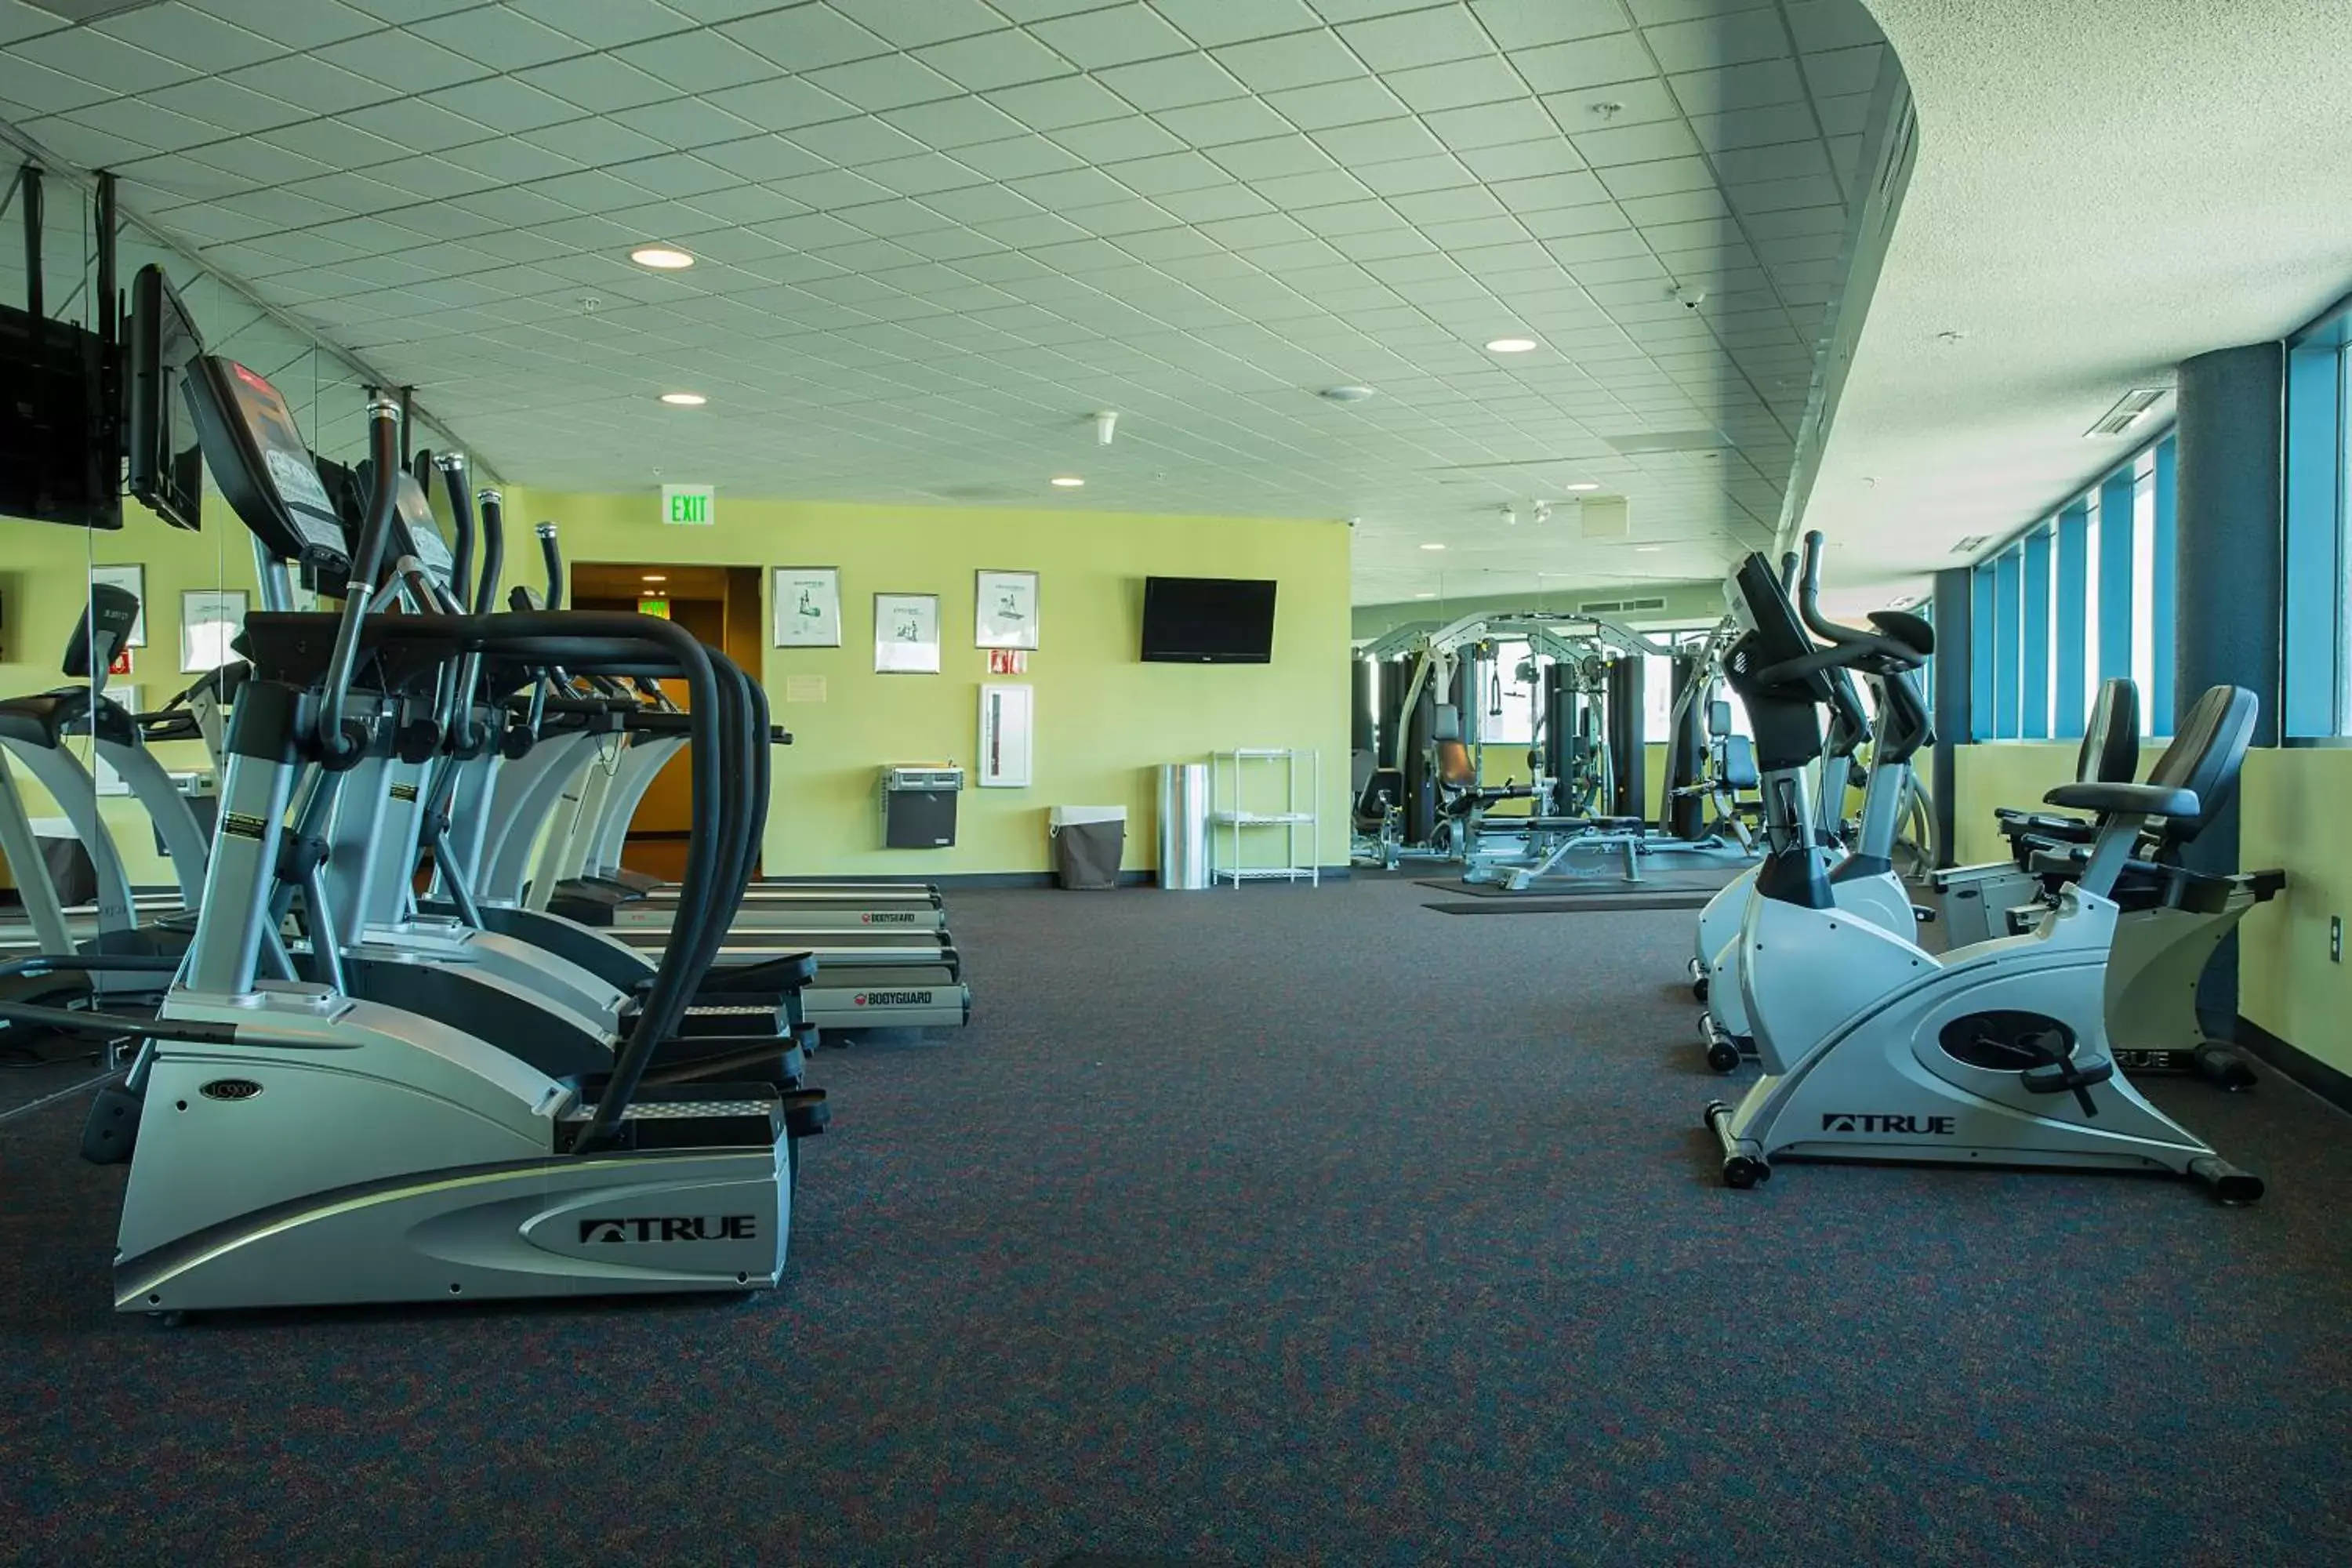 Fitness centre/facilities, Fitness Center/Facilities in Avista Resort